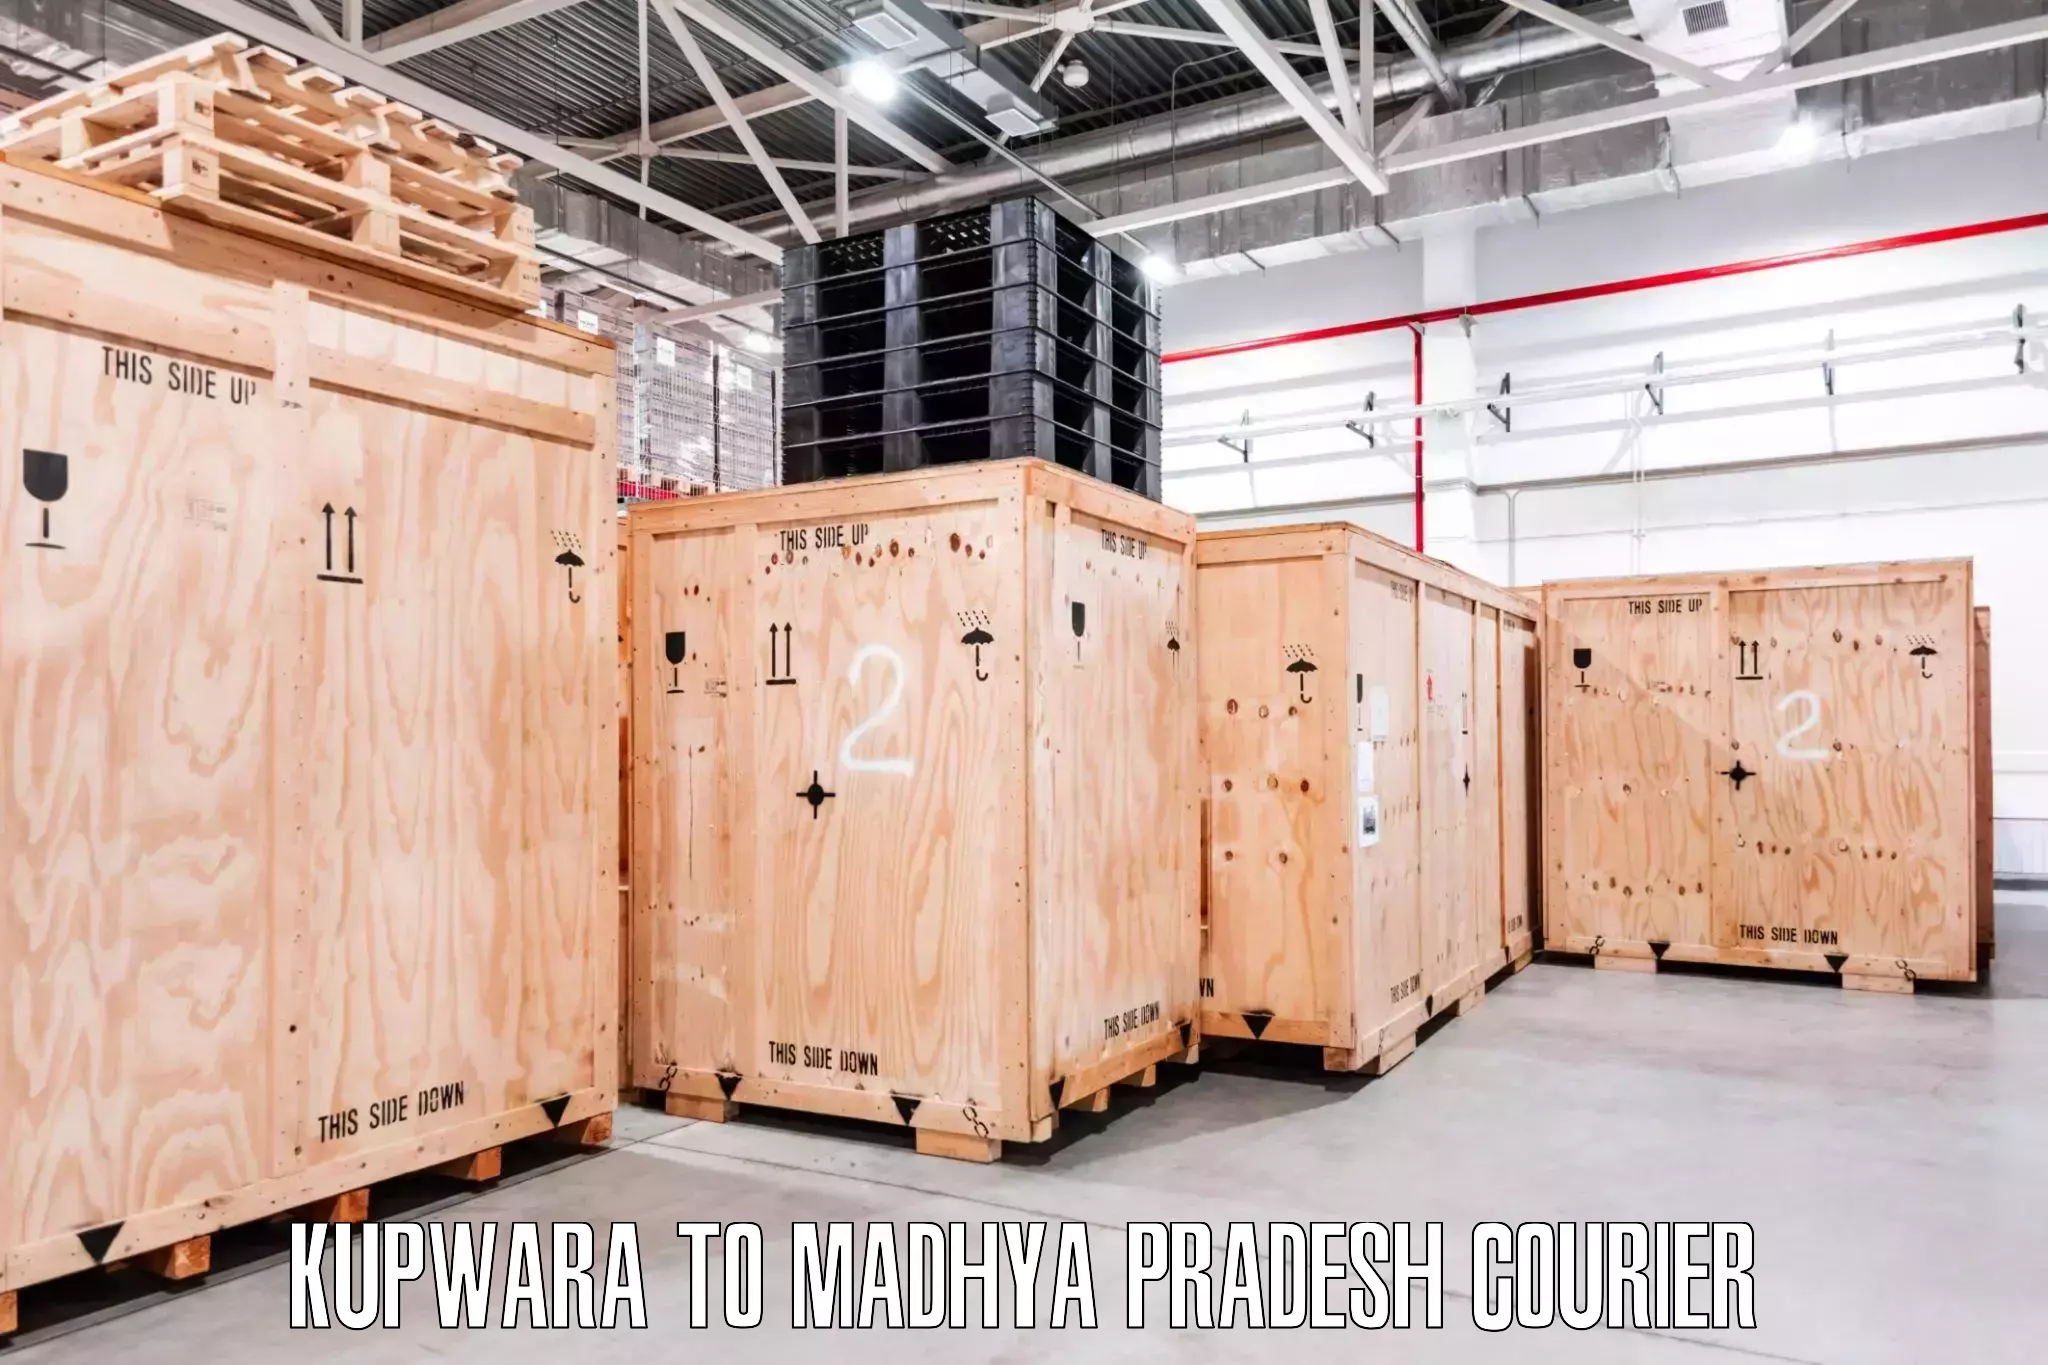 Professional packing services Kupwara to Budaganj